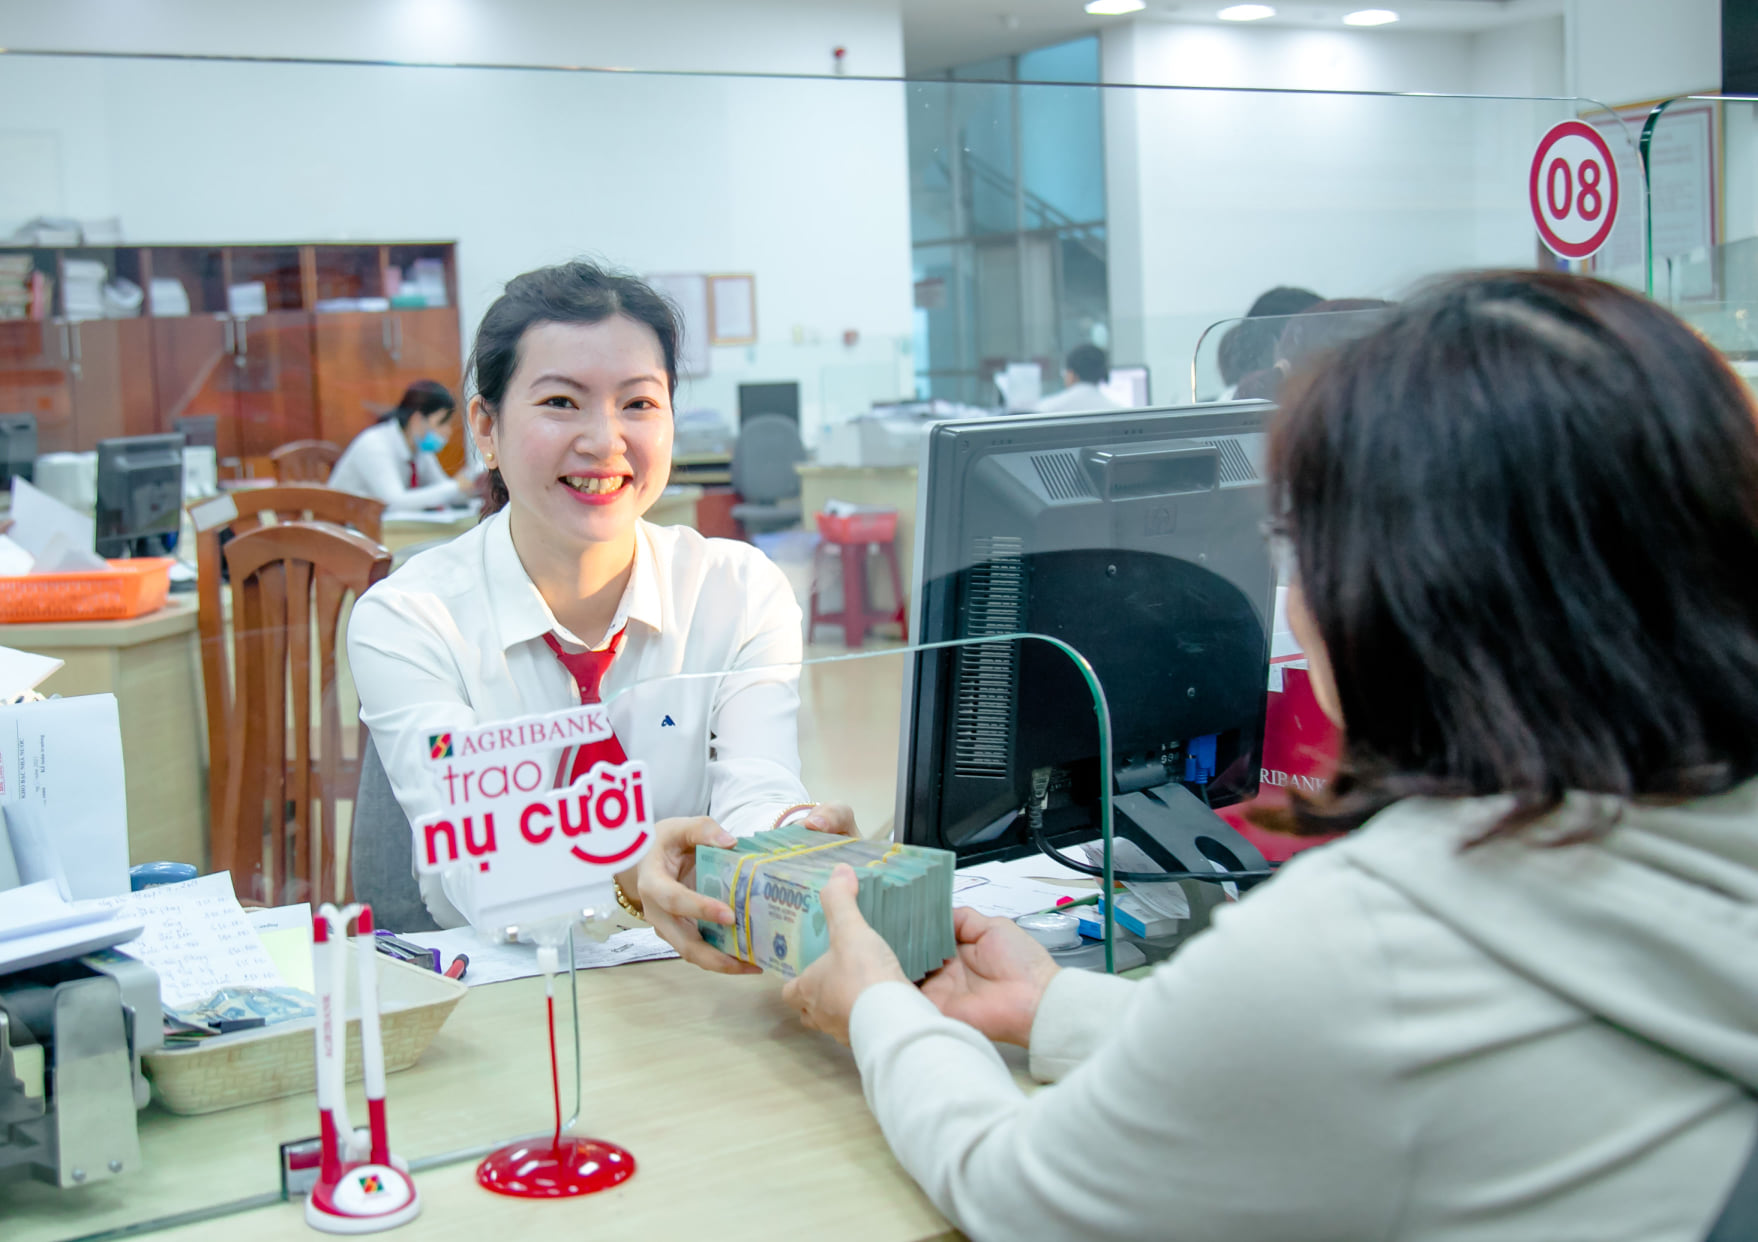 Agribank Phú Yên triển khai đồng bộ nhiều giải pháp hỗ trợ khách hàng, góp phần đẩy lùi tín dụng đen - Ảnh 6.